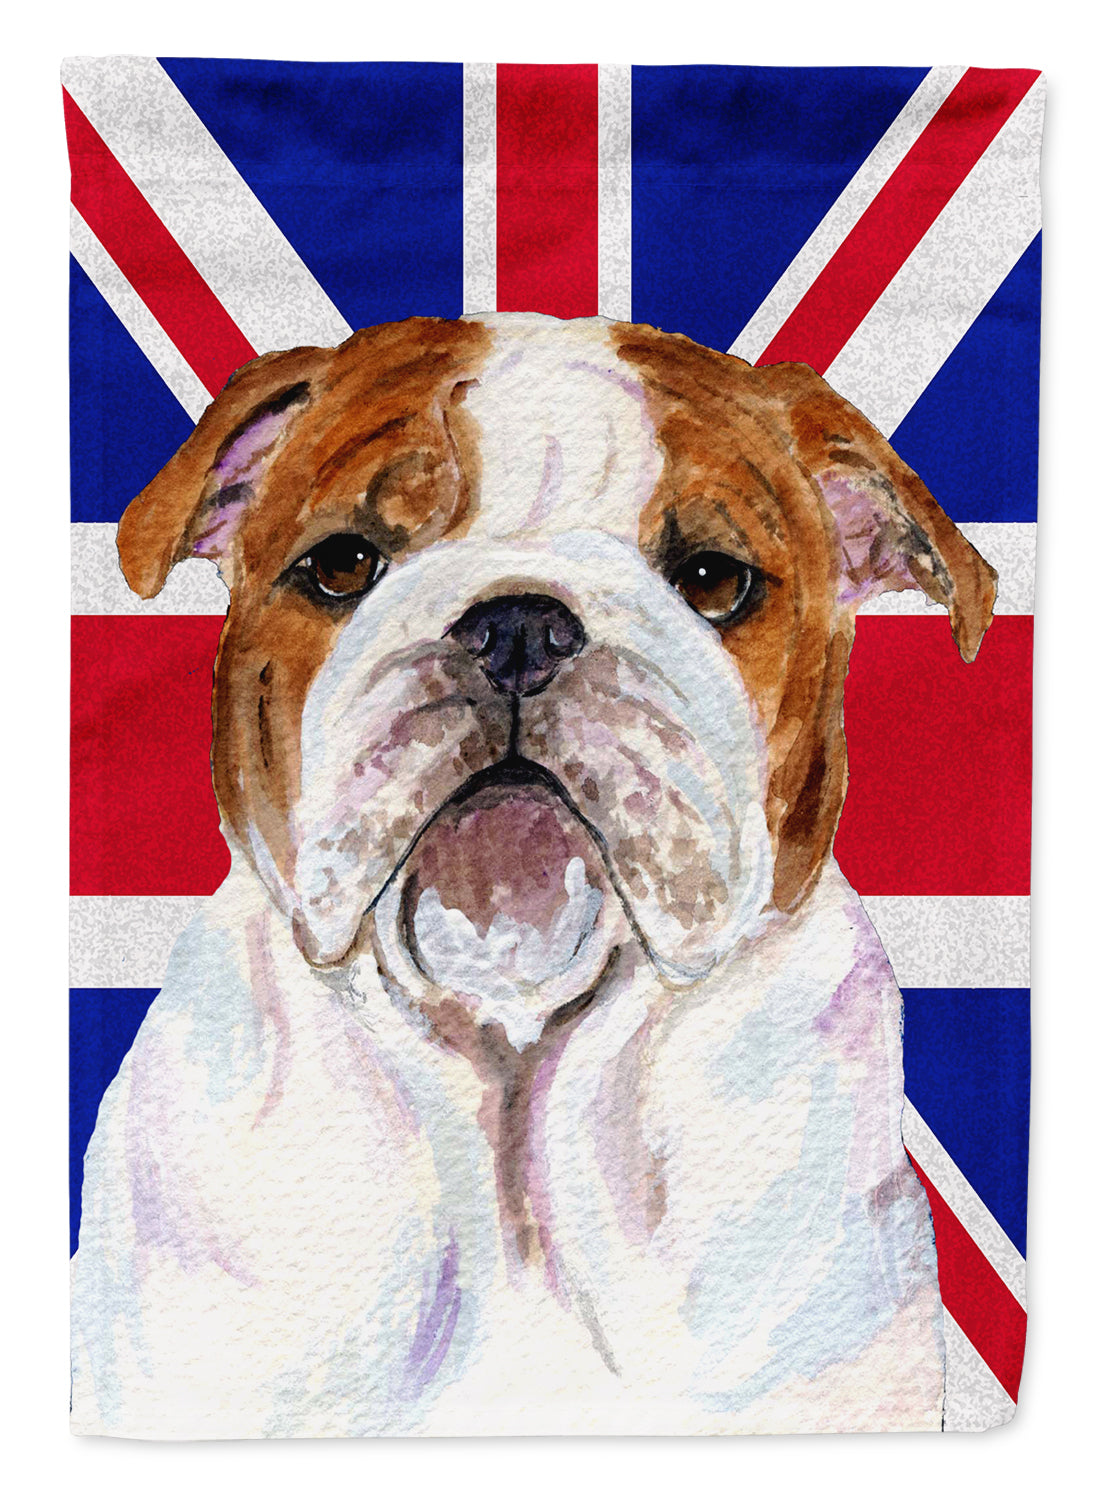 English Bulldog with English Union Jack British Flag Flag Garden Size SS4926GF